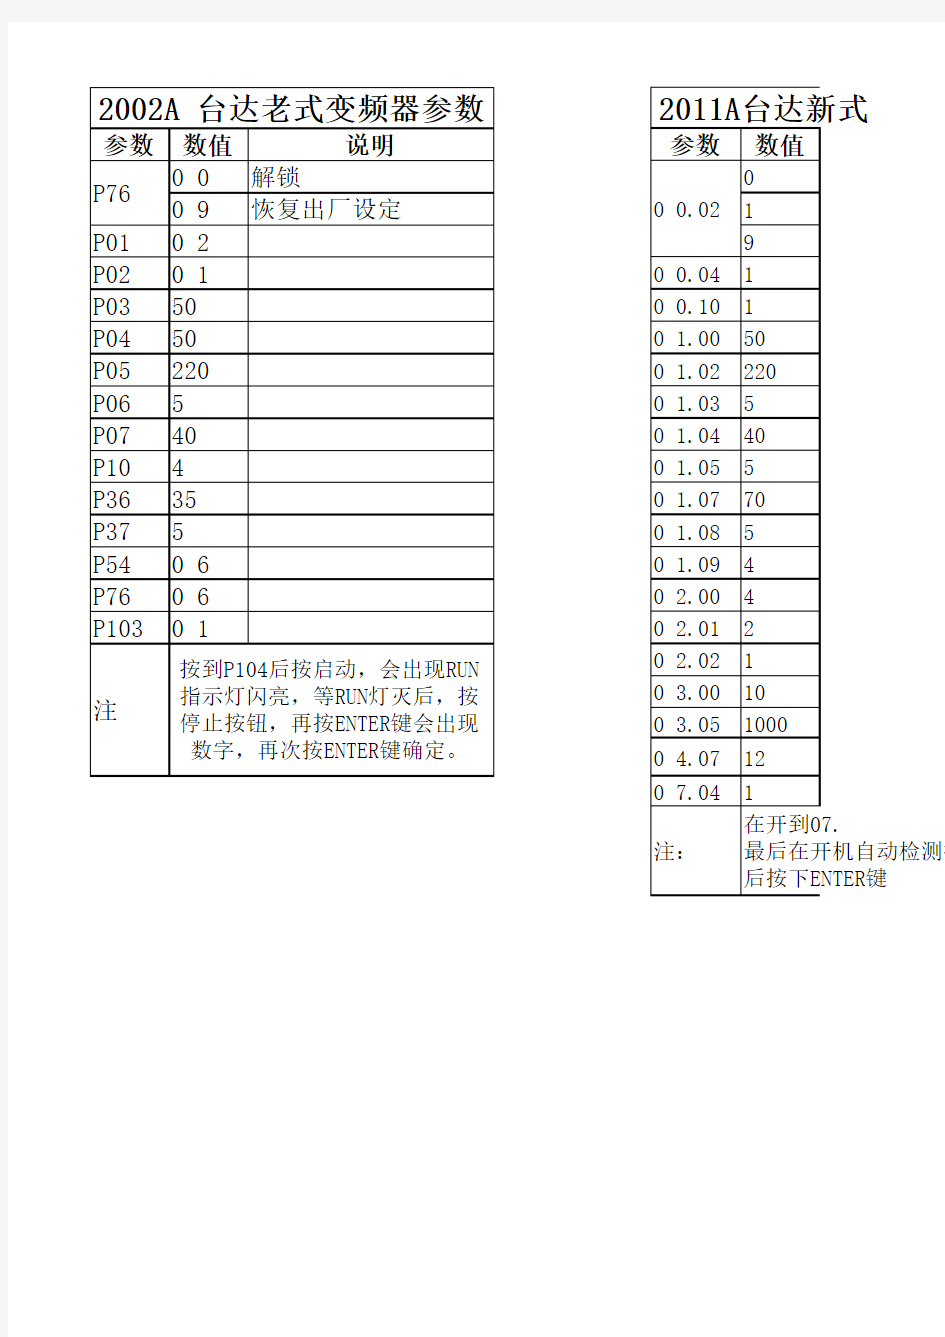 台达变频器参数设置表(E-M)